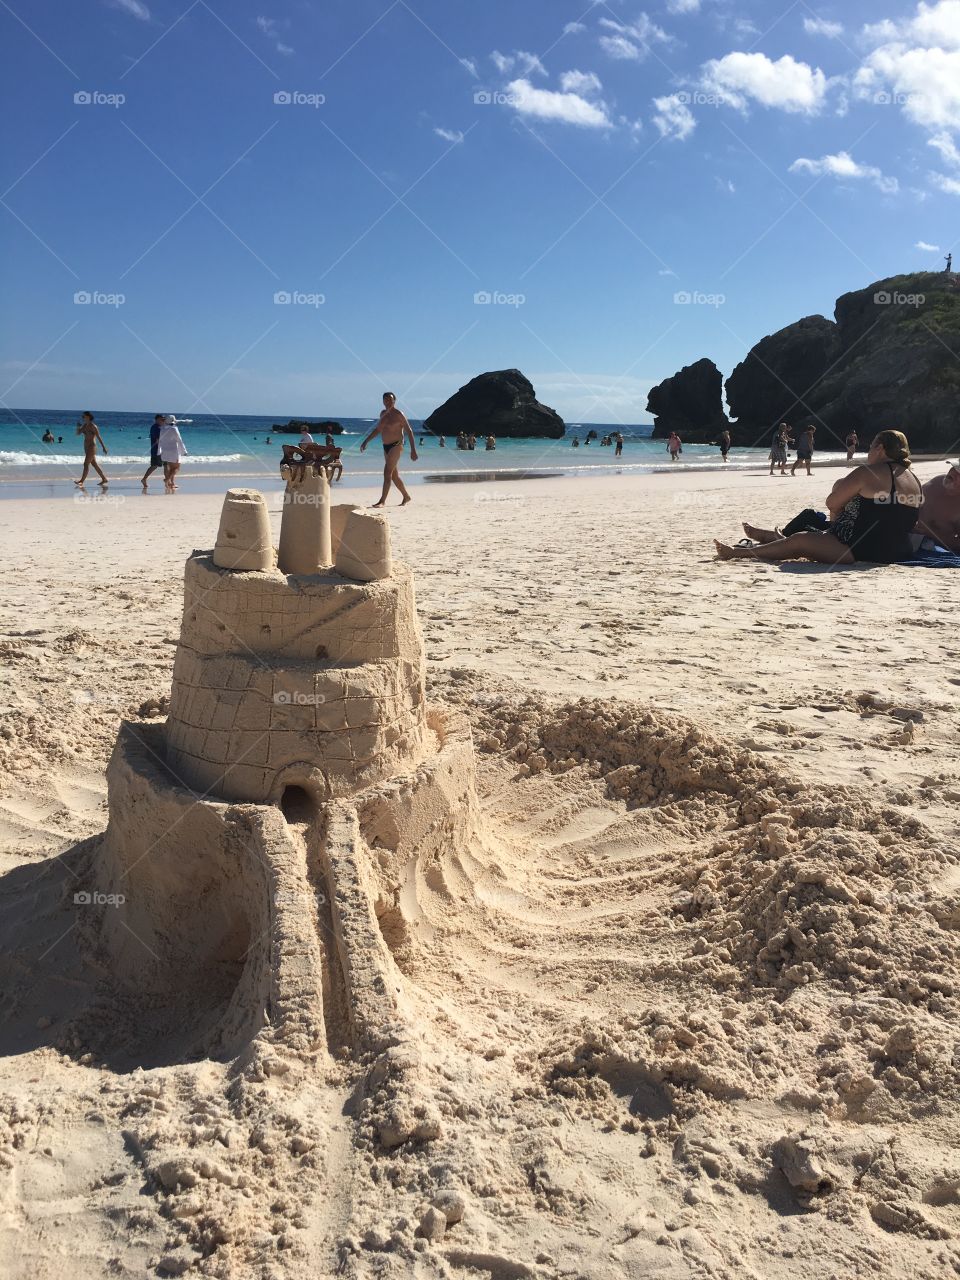 Beach day sand castle